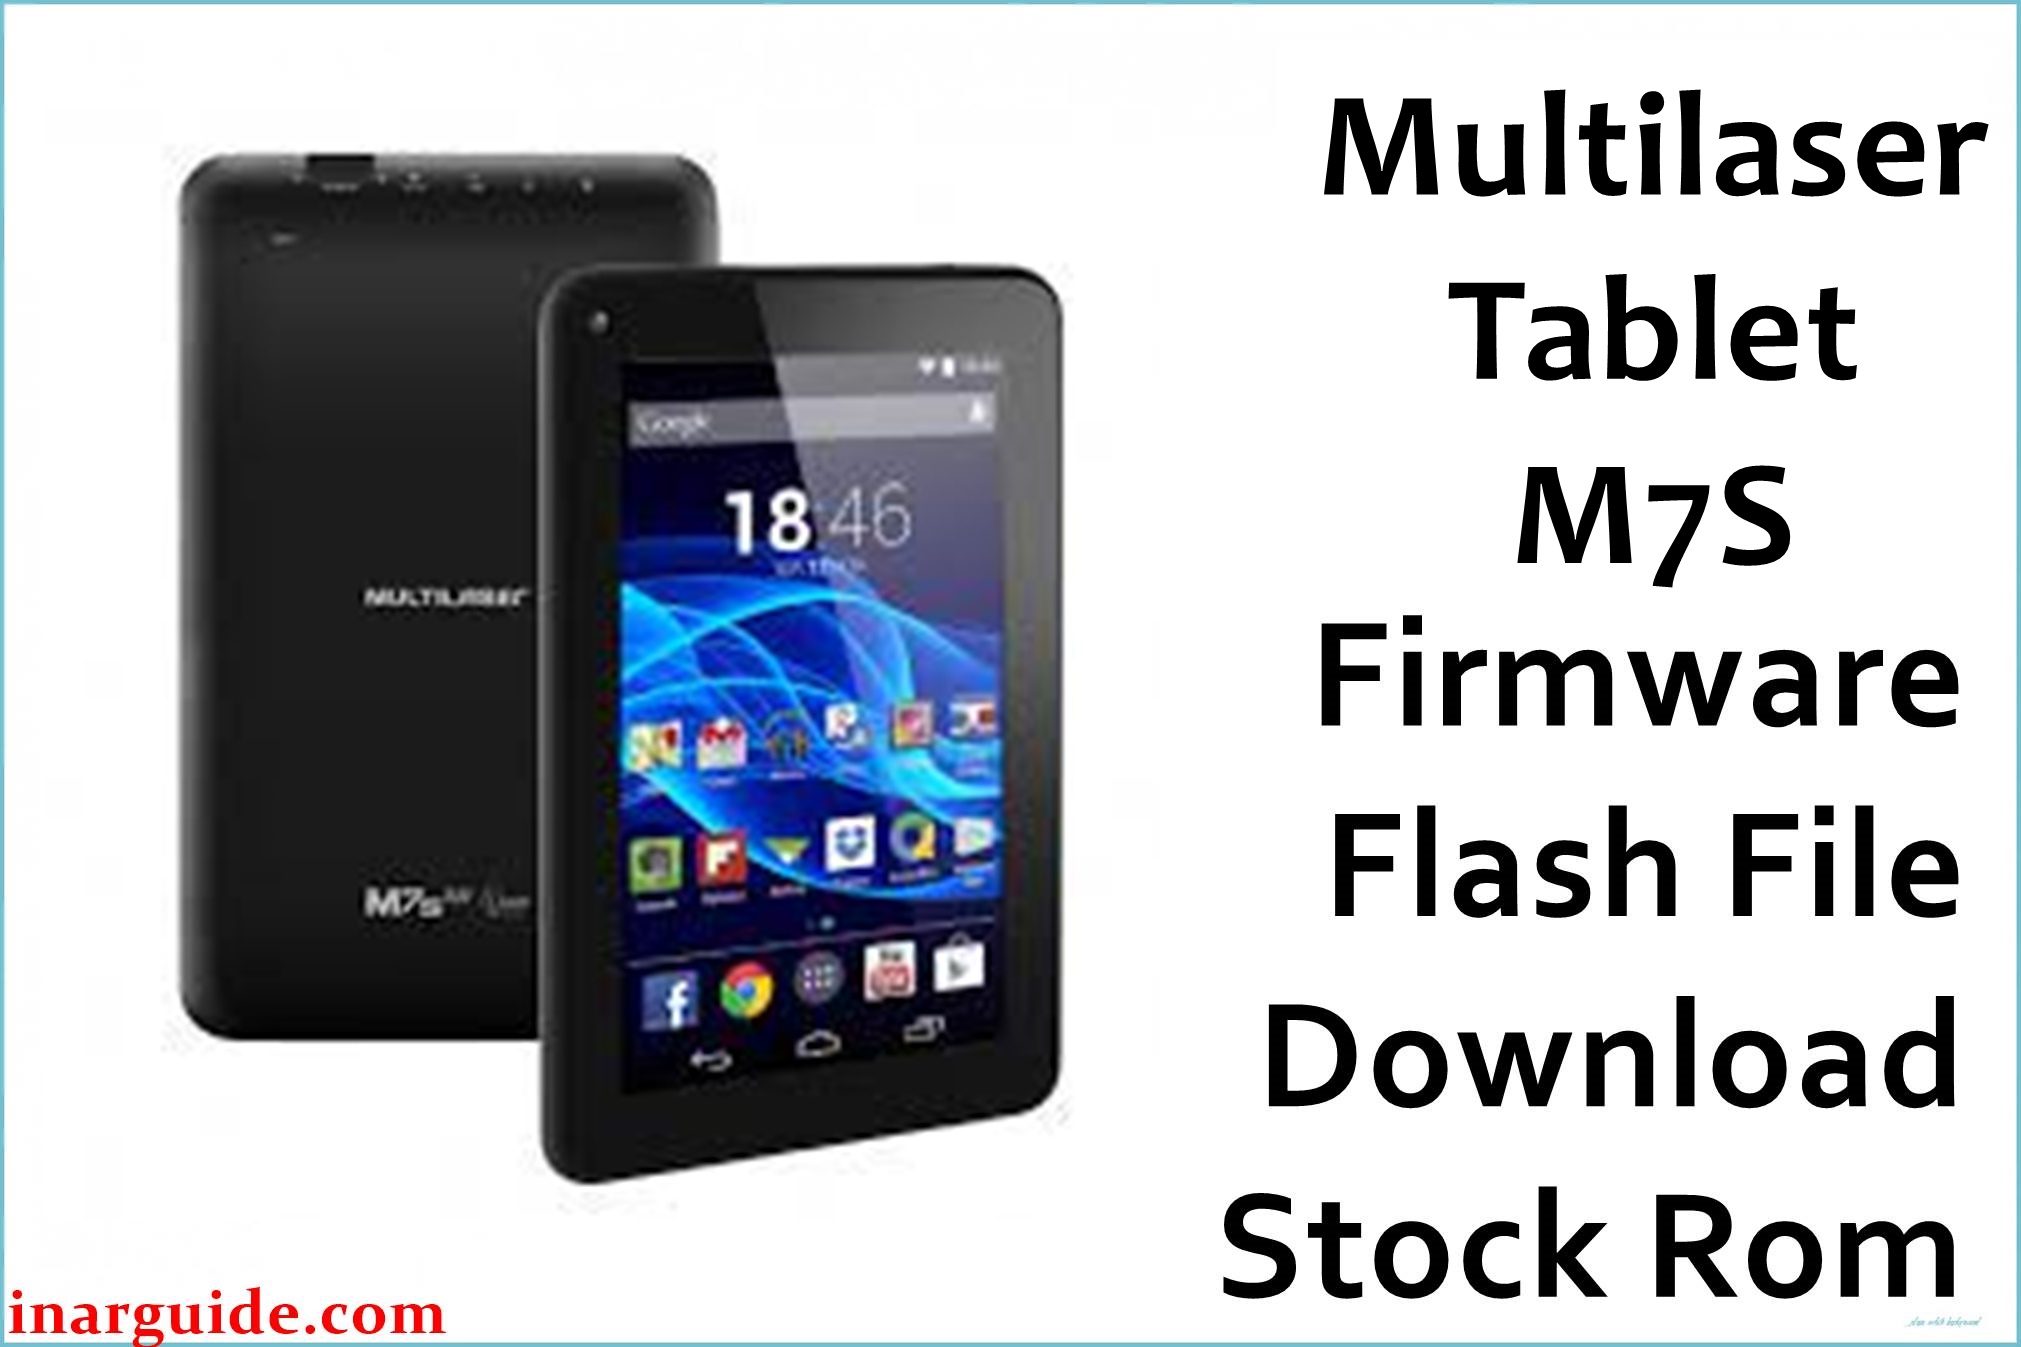 Multilaser Tablet M7S